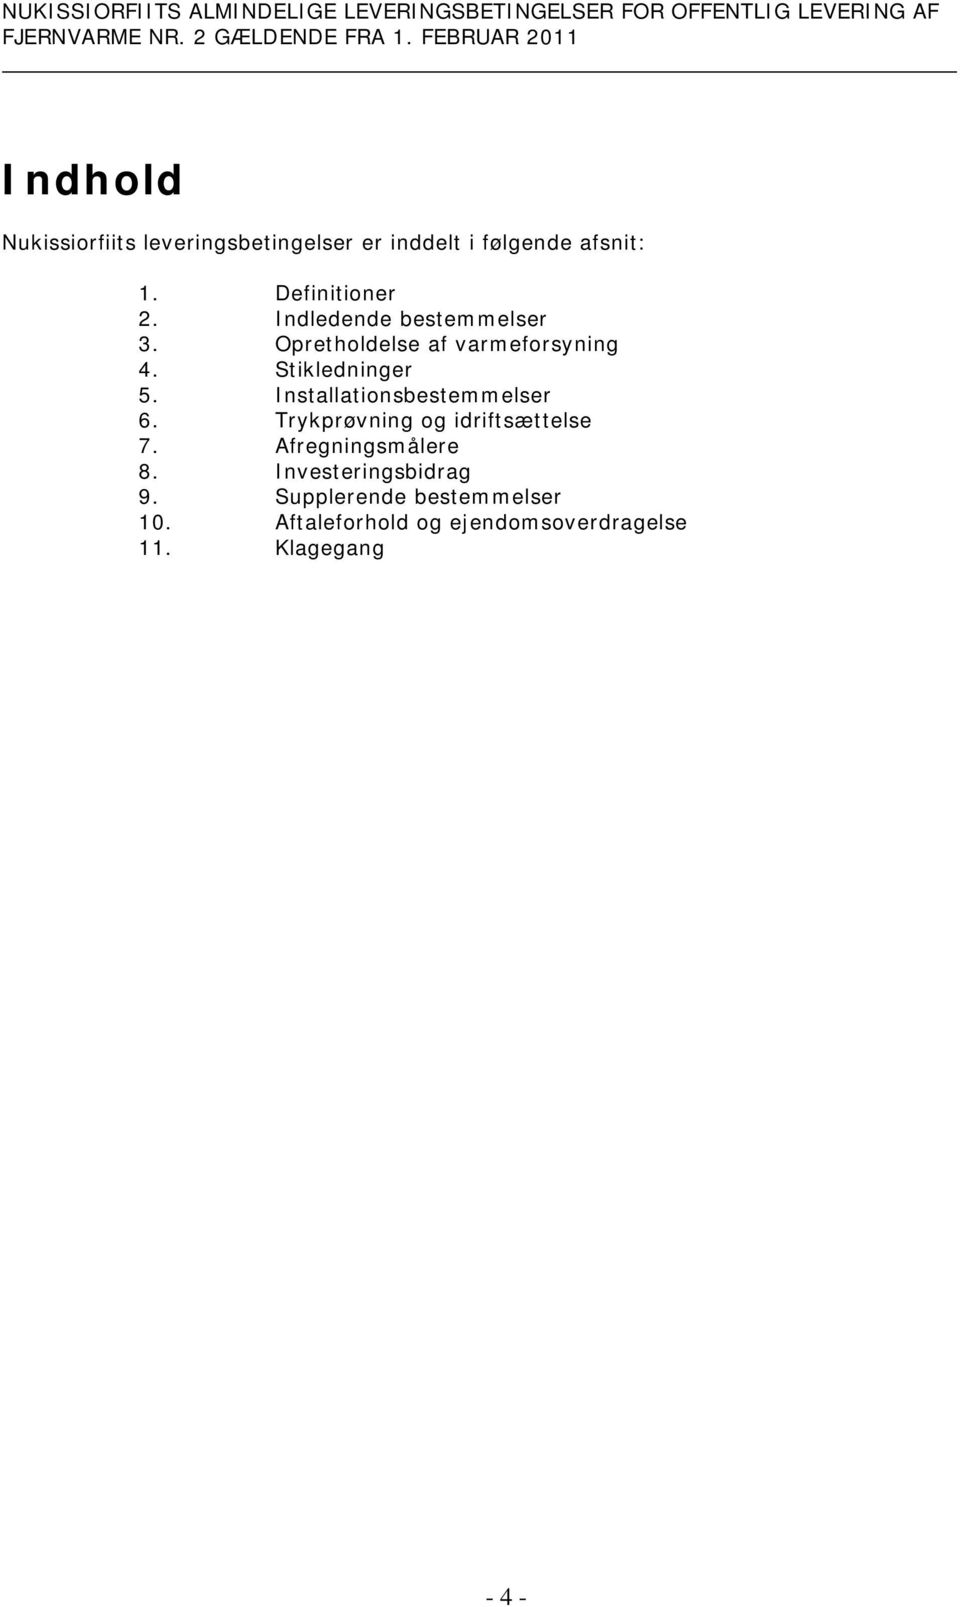 Stikledninger 5. Installationsbestemmelser 6. Trykprøvning og idriftsættelse 7.